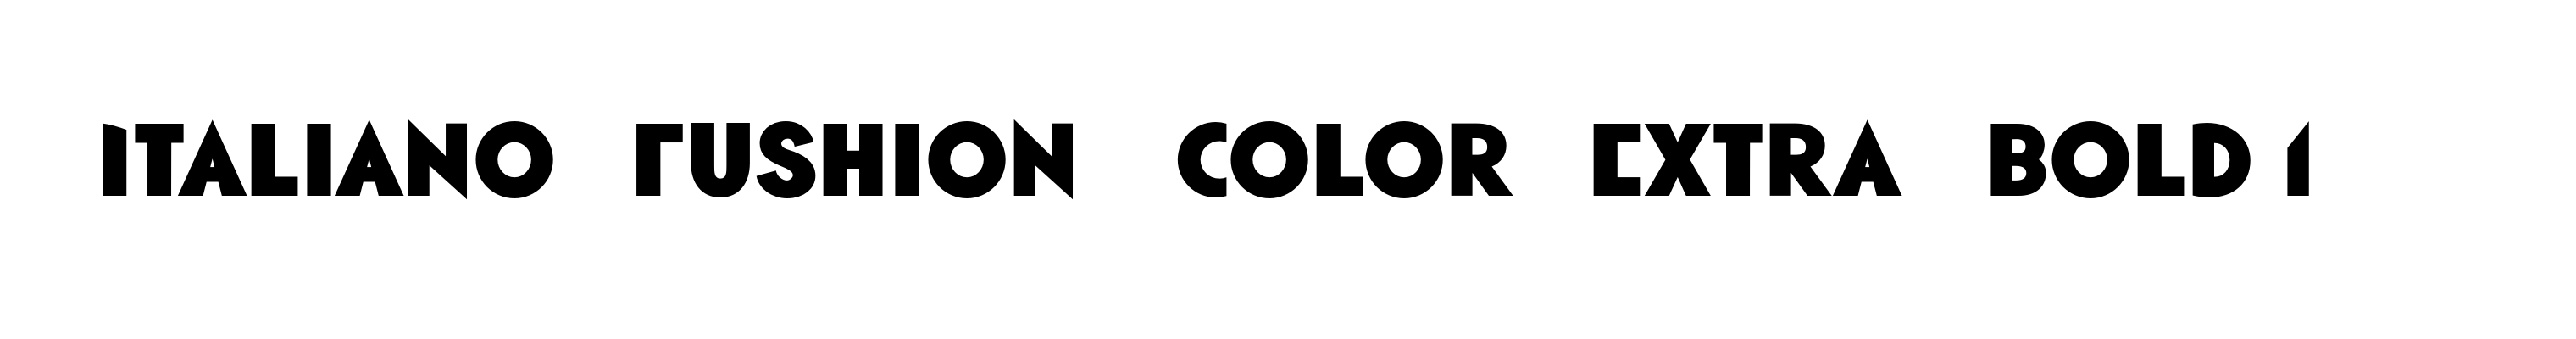 Italiano Fushion Color Extra Bold 1